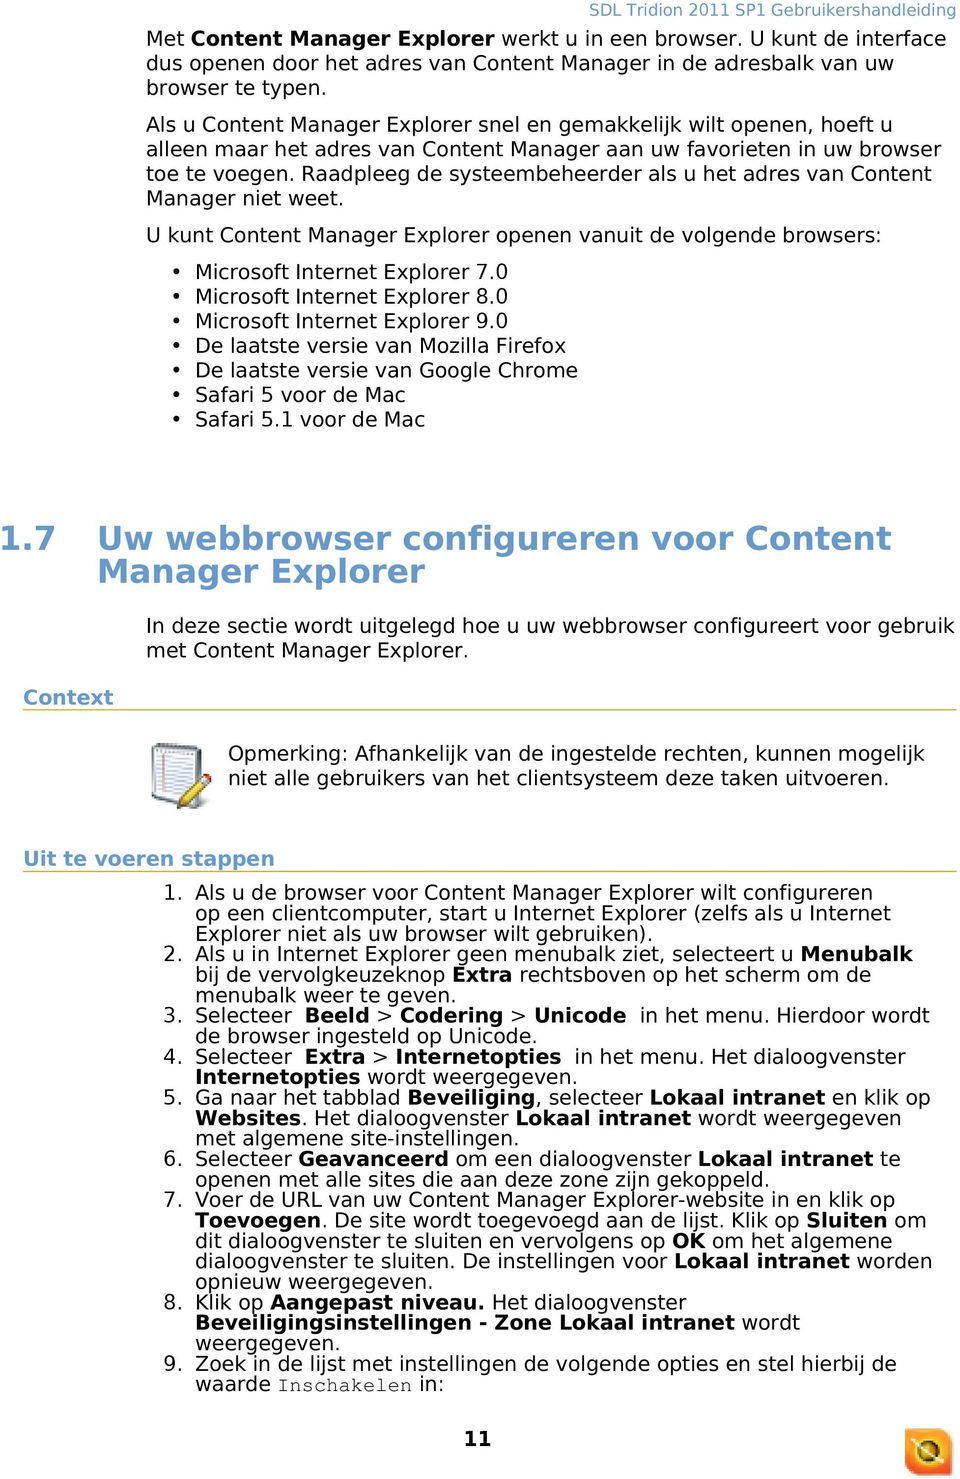 Raadpleeg de systeembeheerder als u het adres van Content Manager niet weet. U kunt Content Manager Explorer openen vanuit de volgende browsers: 1.7 Microsoft Internet Explorer 7.